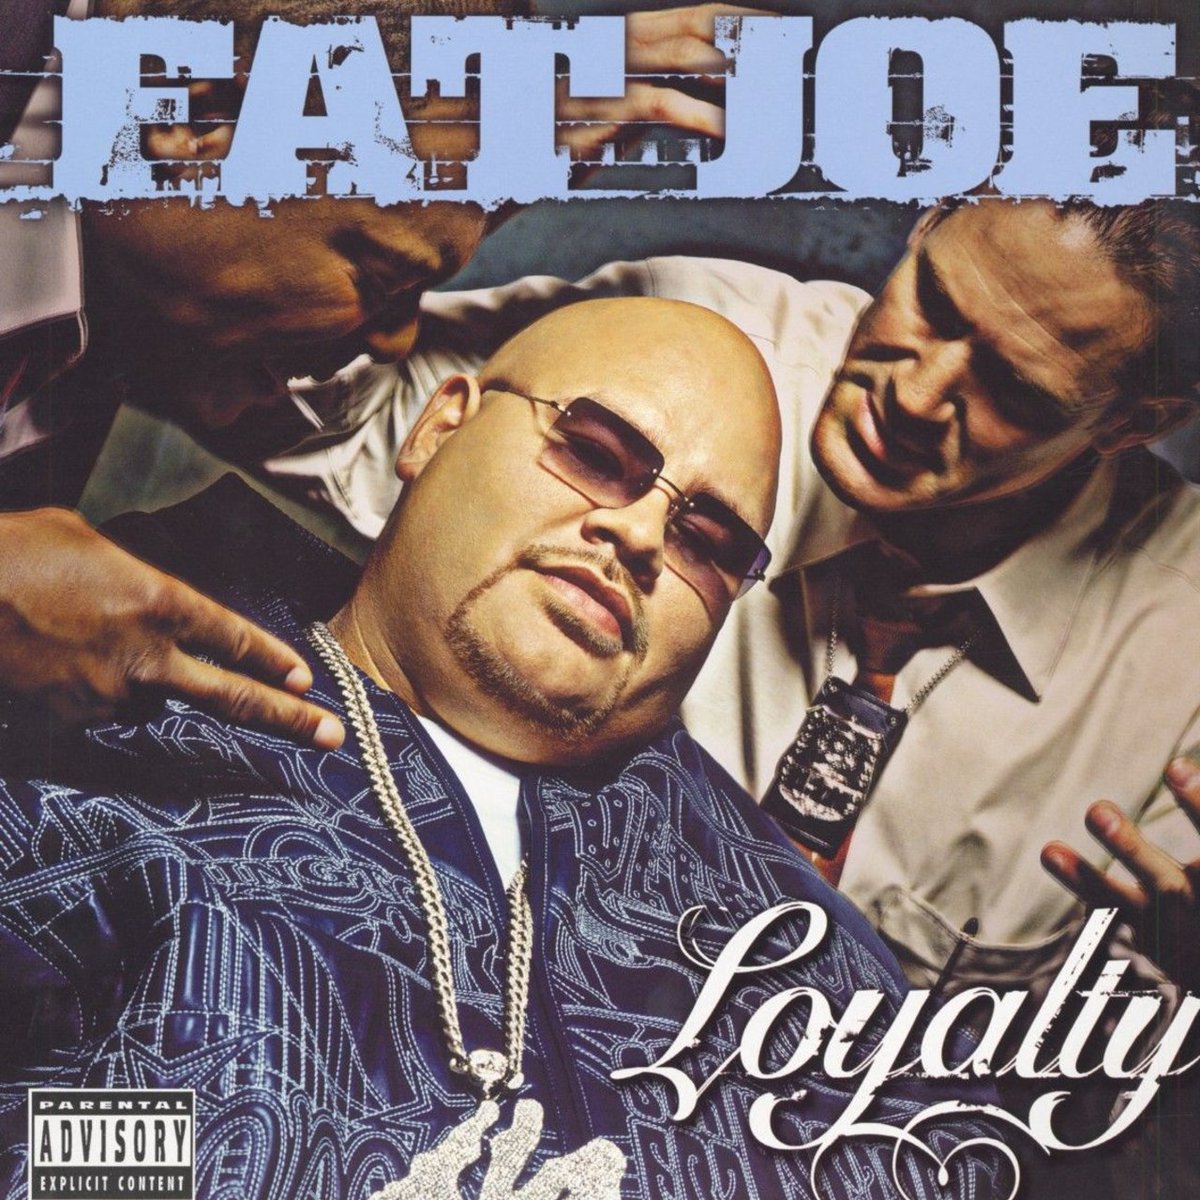 Listen to Born In The Ghetto by Fat Joe tidal.com/track/3461377?u